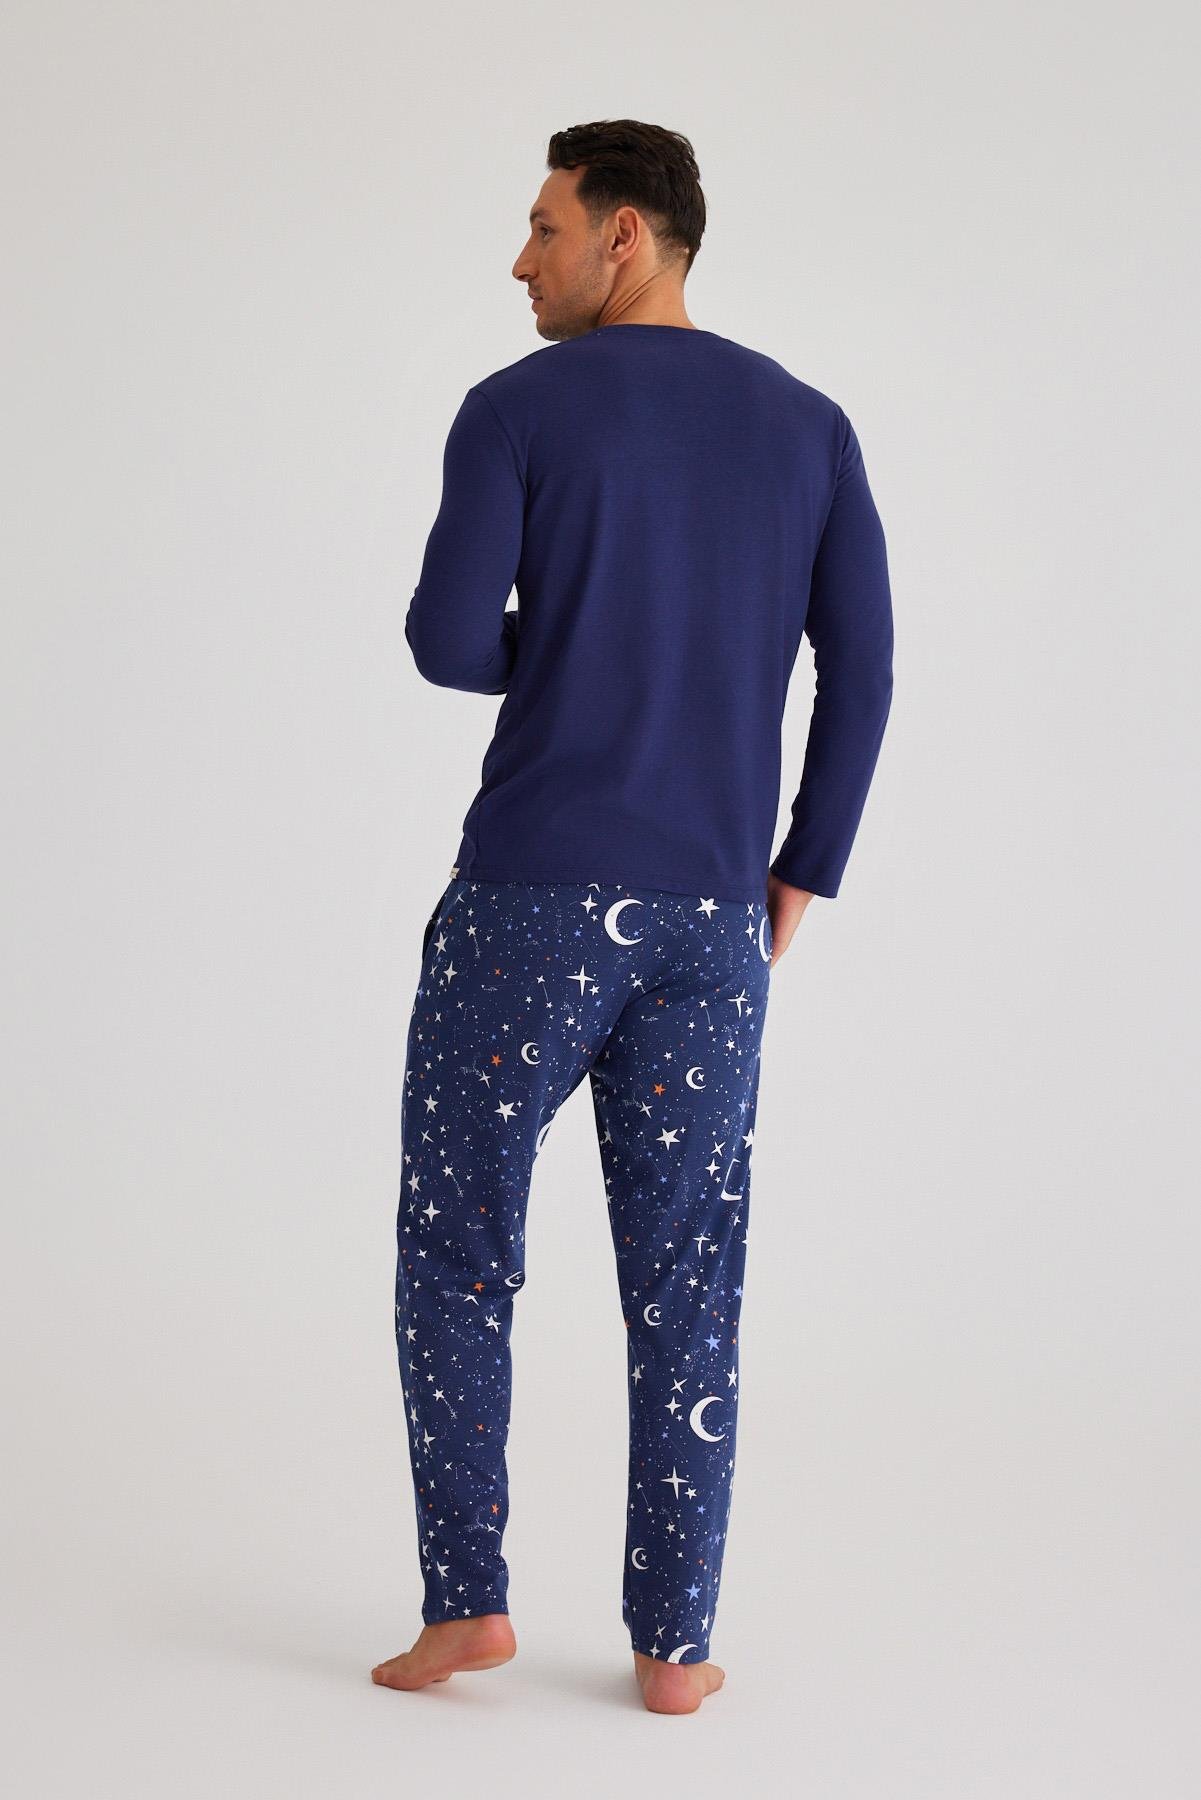 Space Erkek Pijama Takımı Lacivert